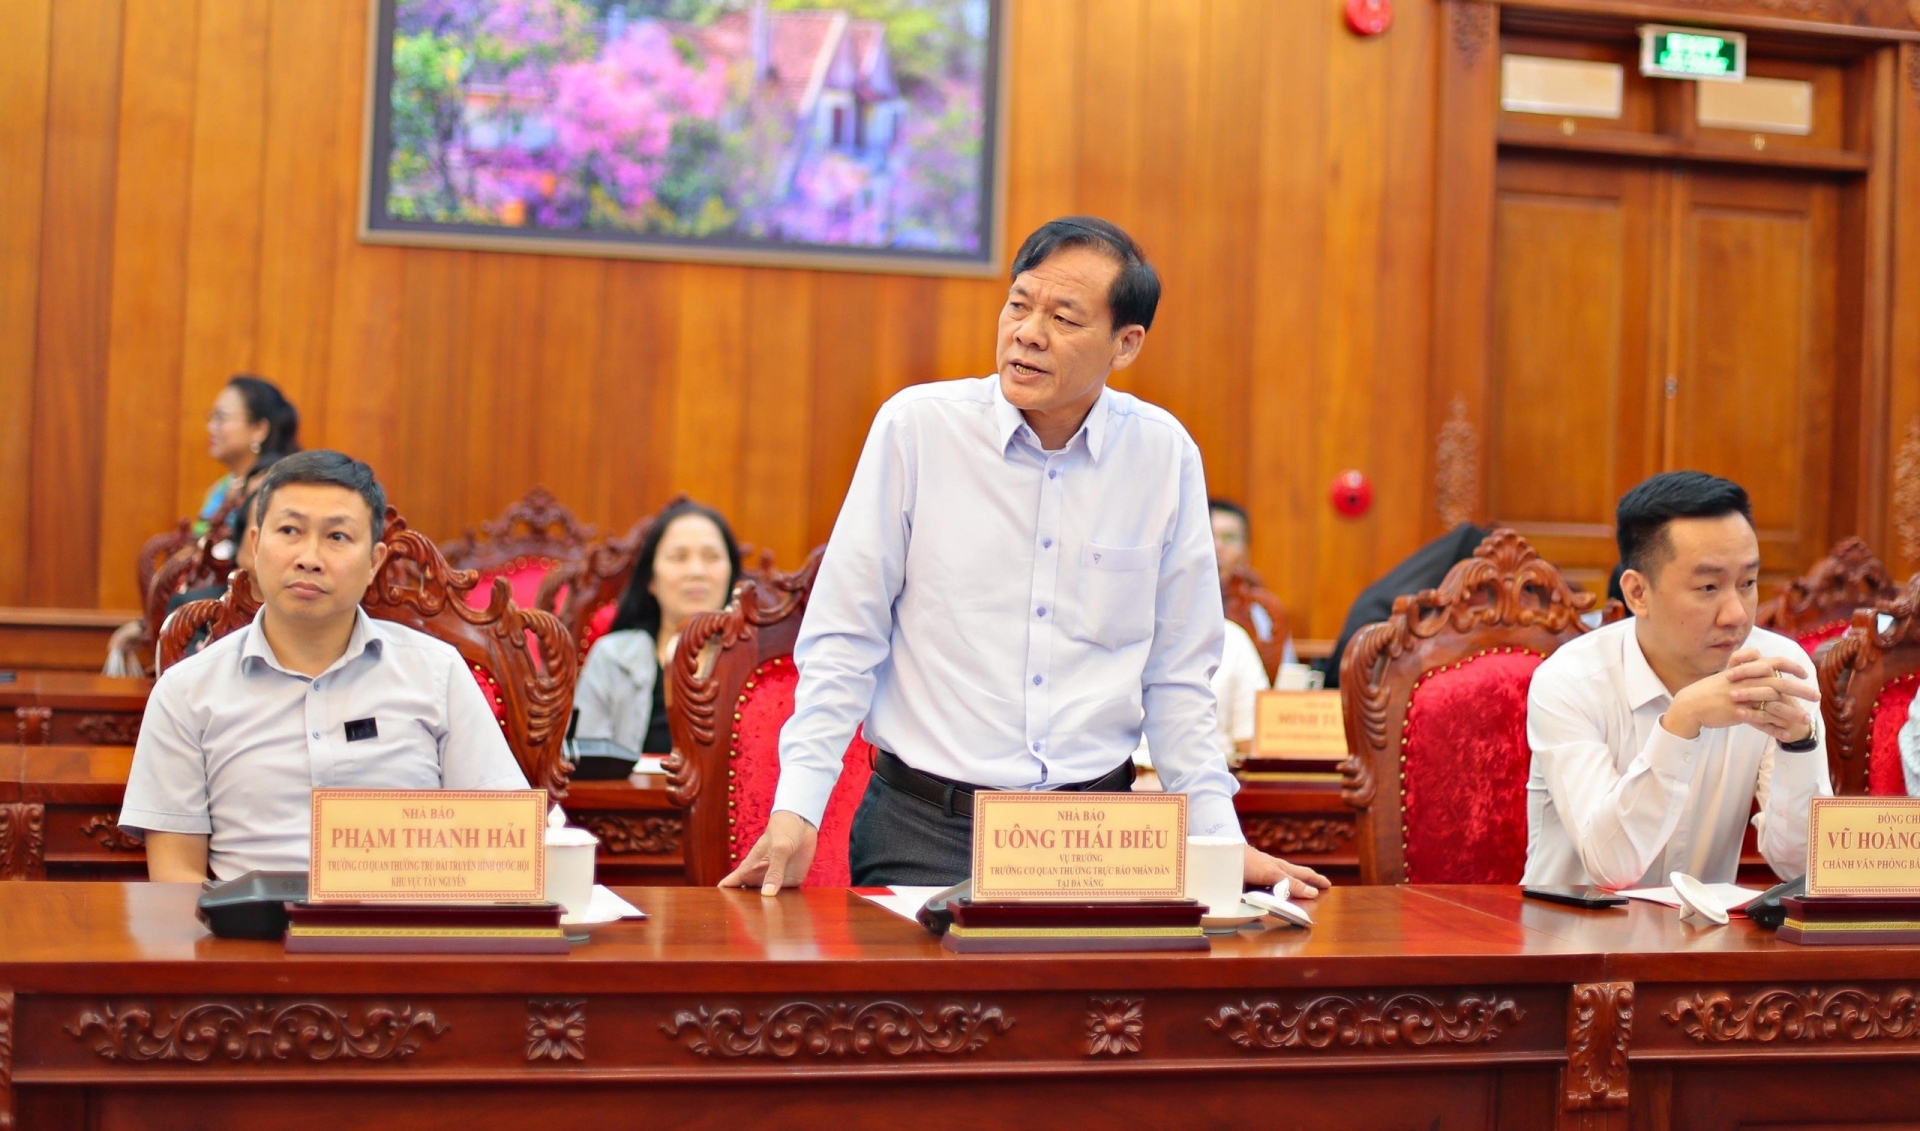 Nhà báo Uông Thái Biểu - Vụ trưởng, Trưởng cơ quan thường trực Báo Nhân Dân tại Đà Nẵng phát biểu ý kiến tại buổi làm việc